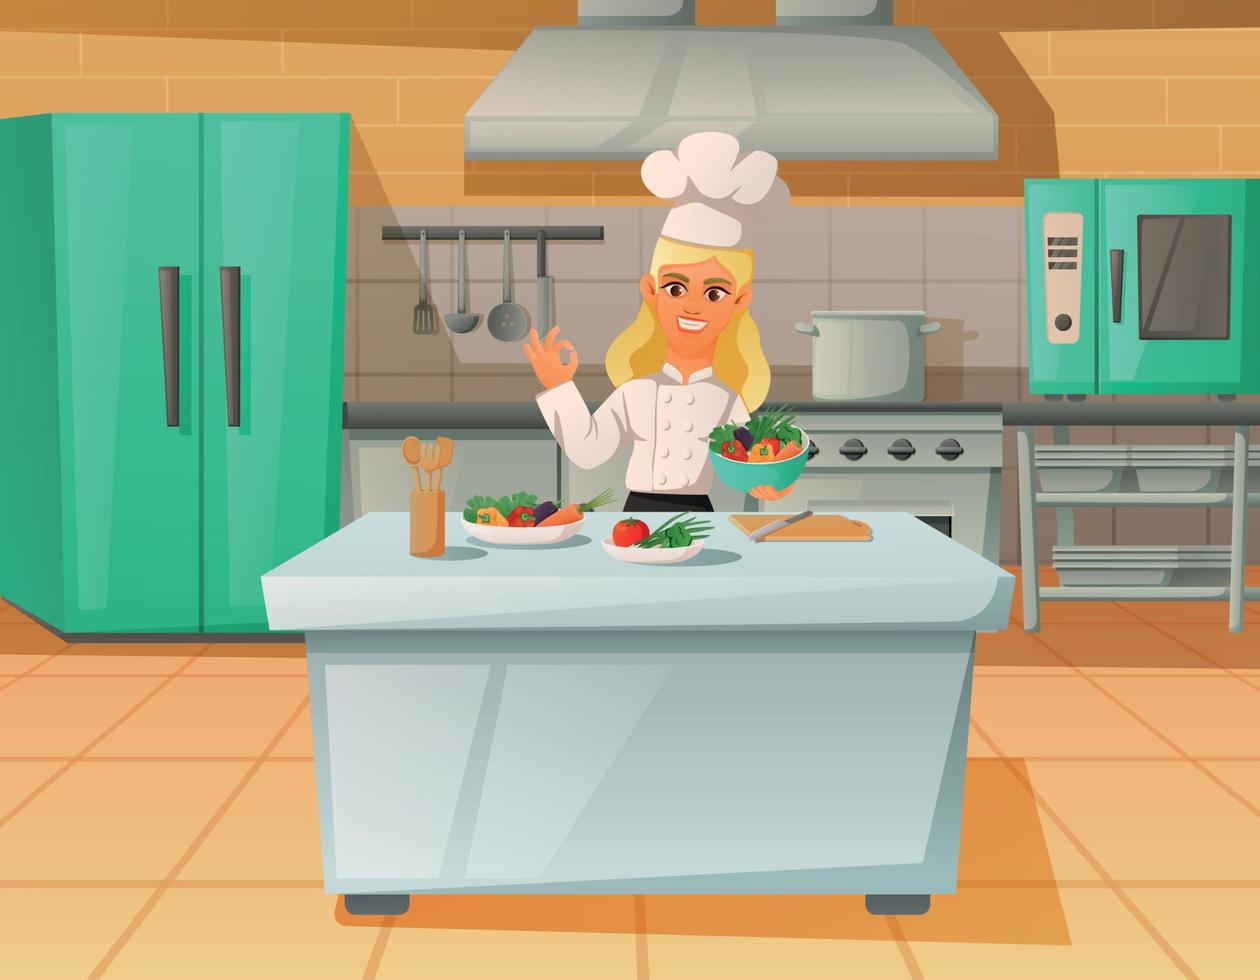 Chef In Kitchen Cartoon Background vector